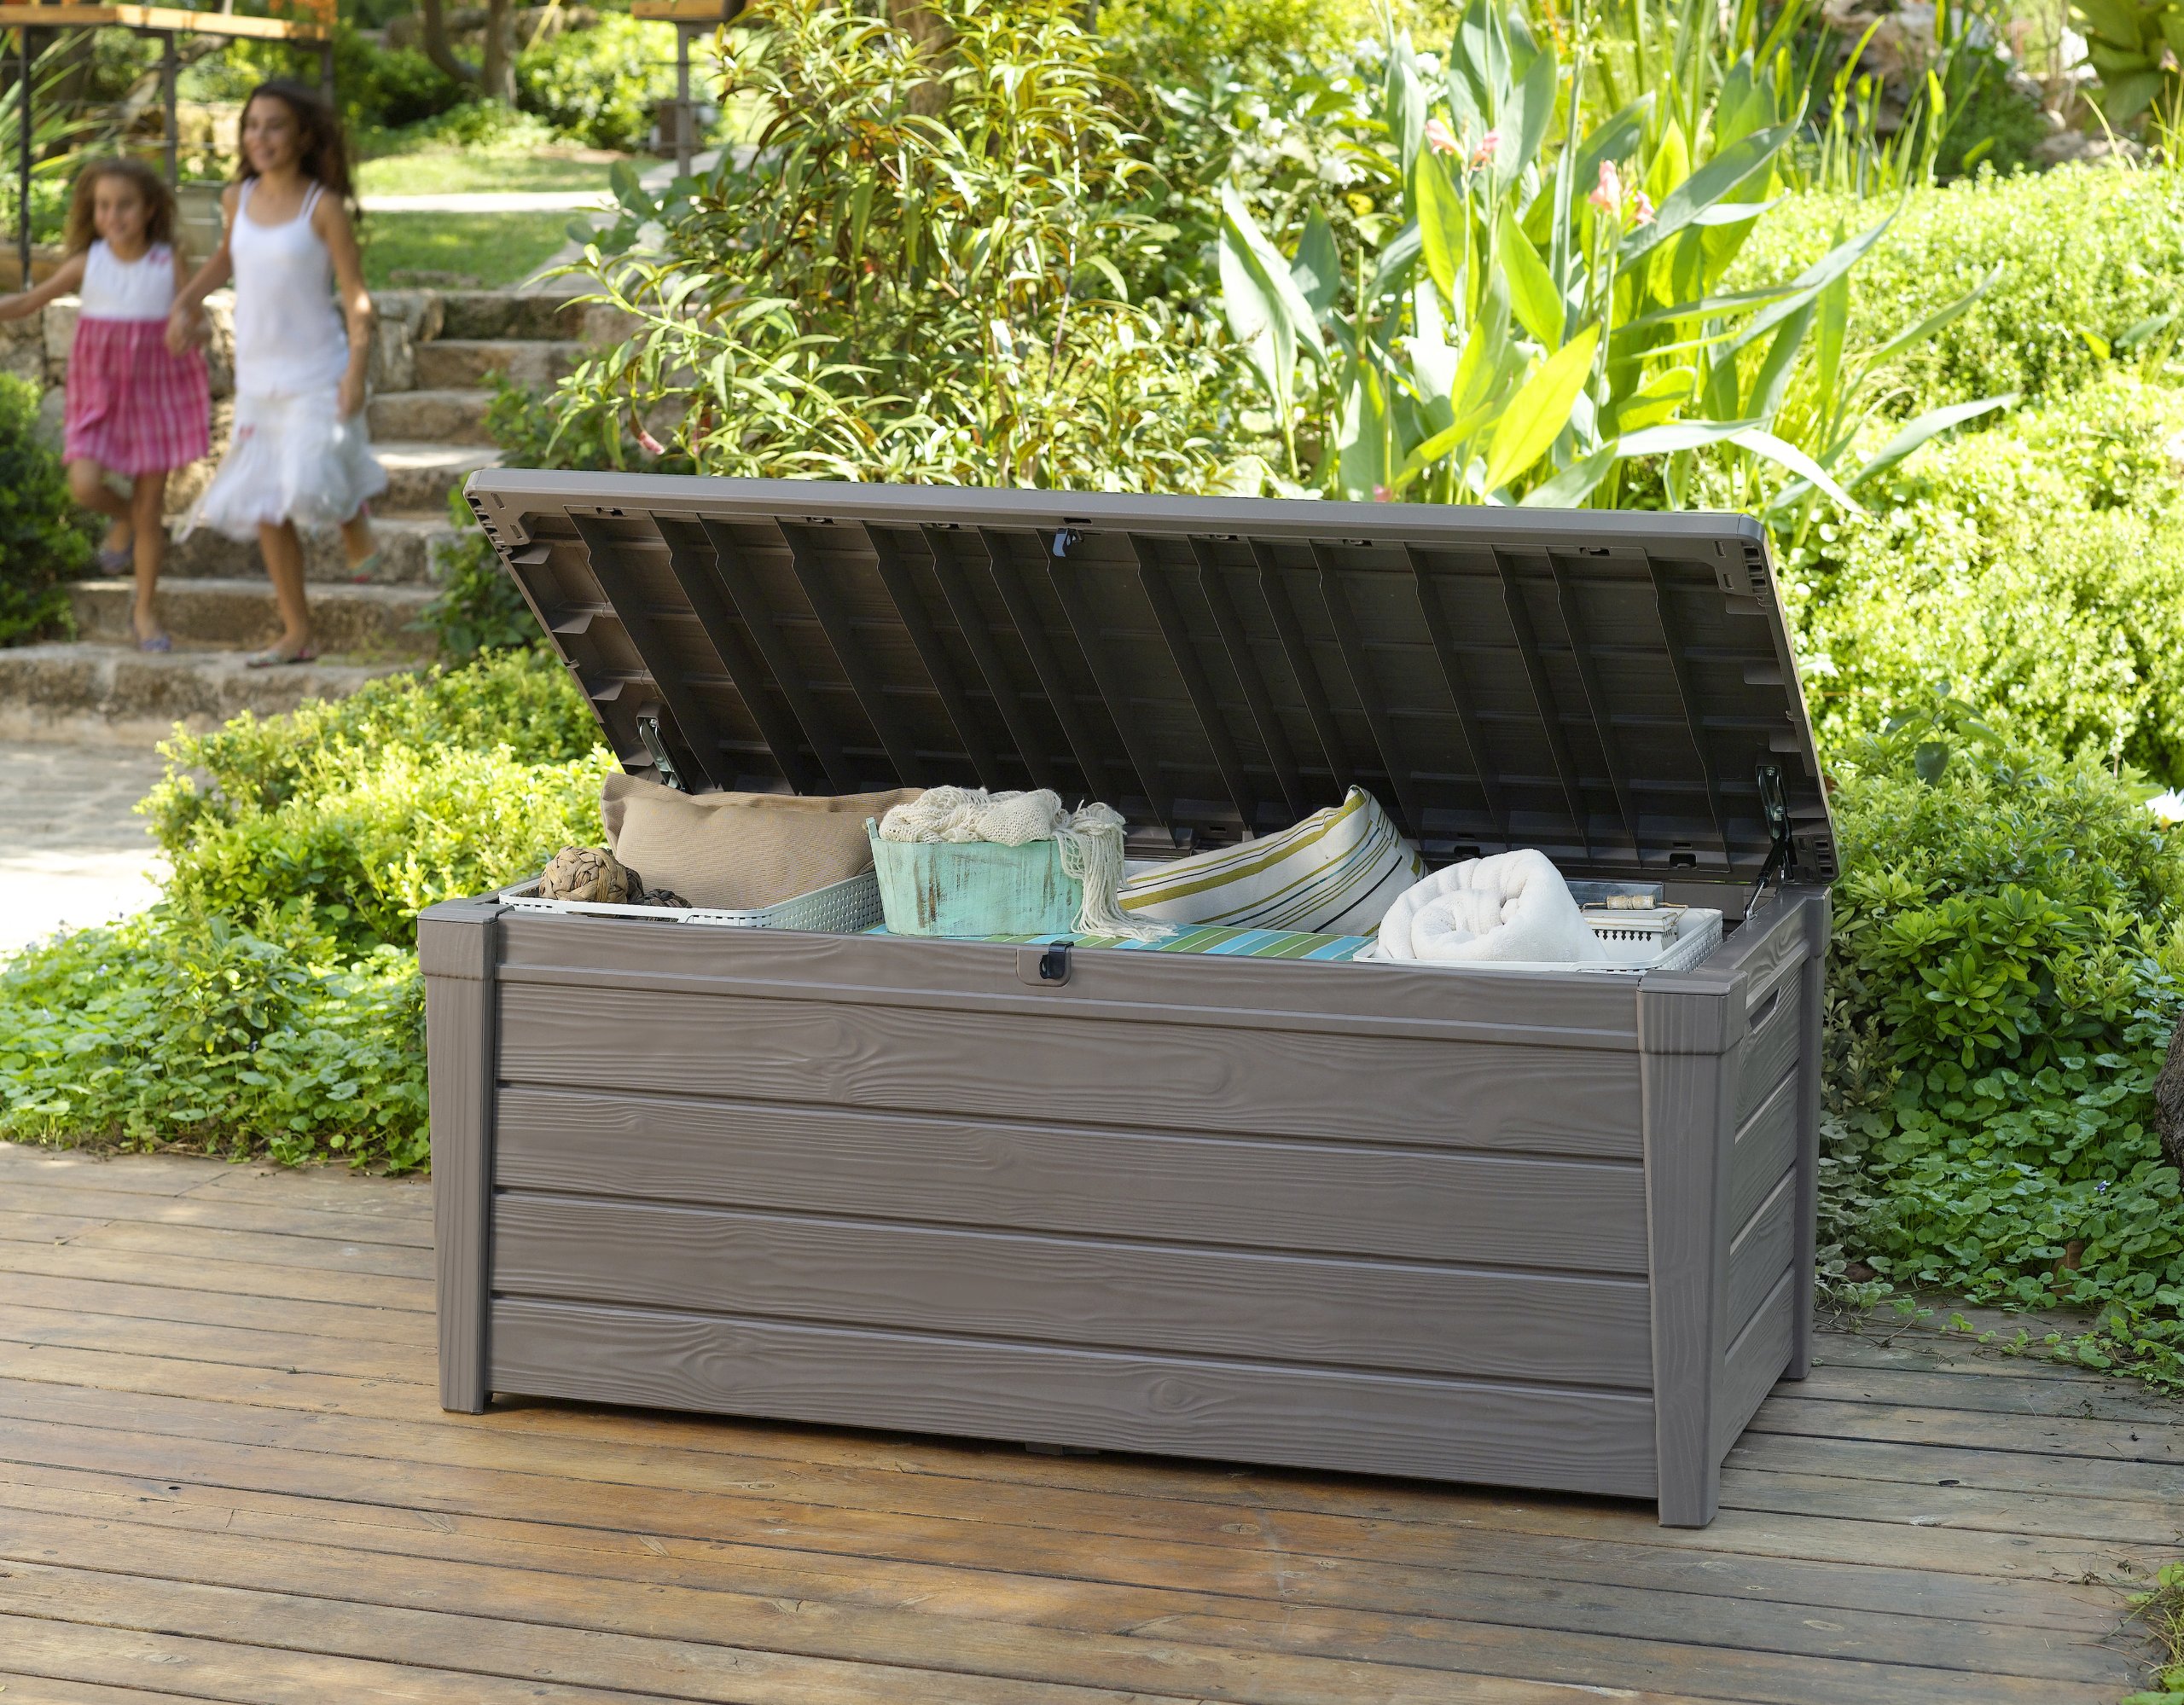 Keter Brightwood 120 Gallon Outdoor Garden Patio Storage Furniture Deck Box